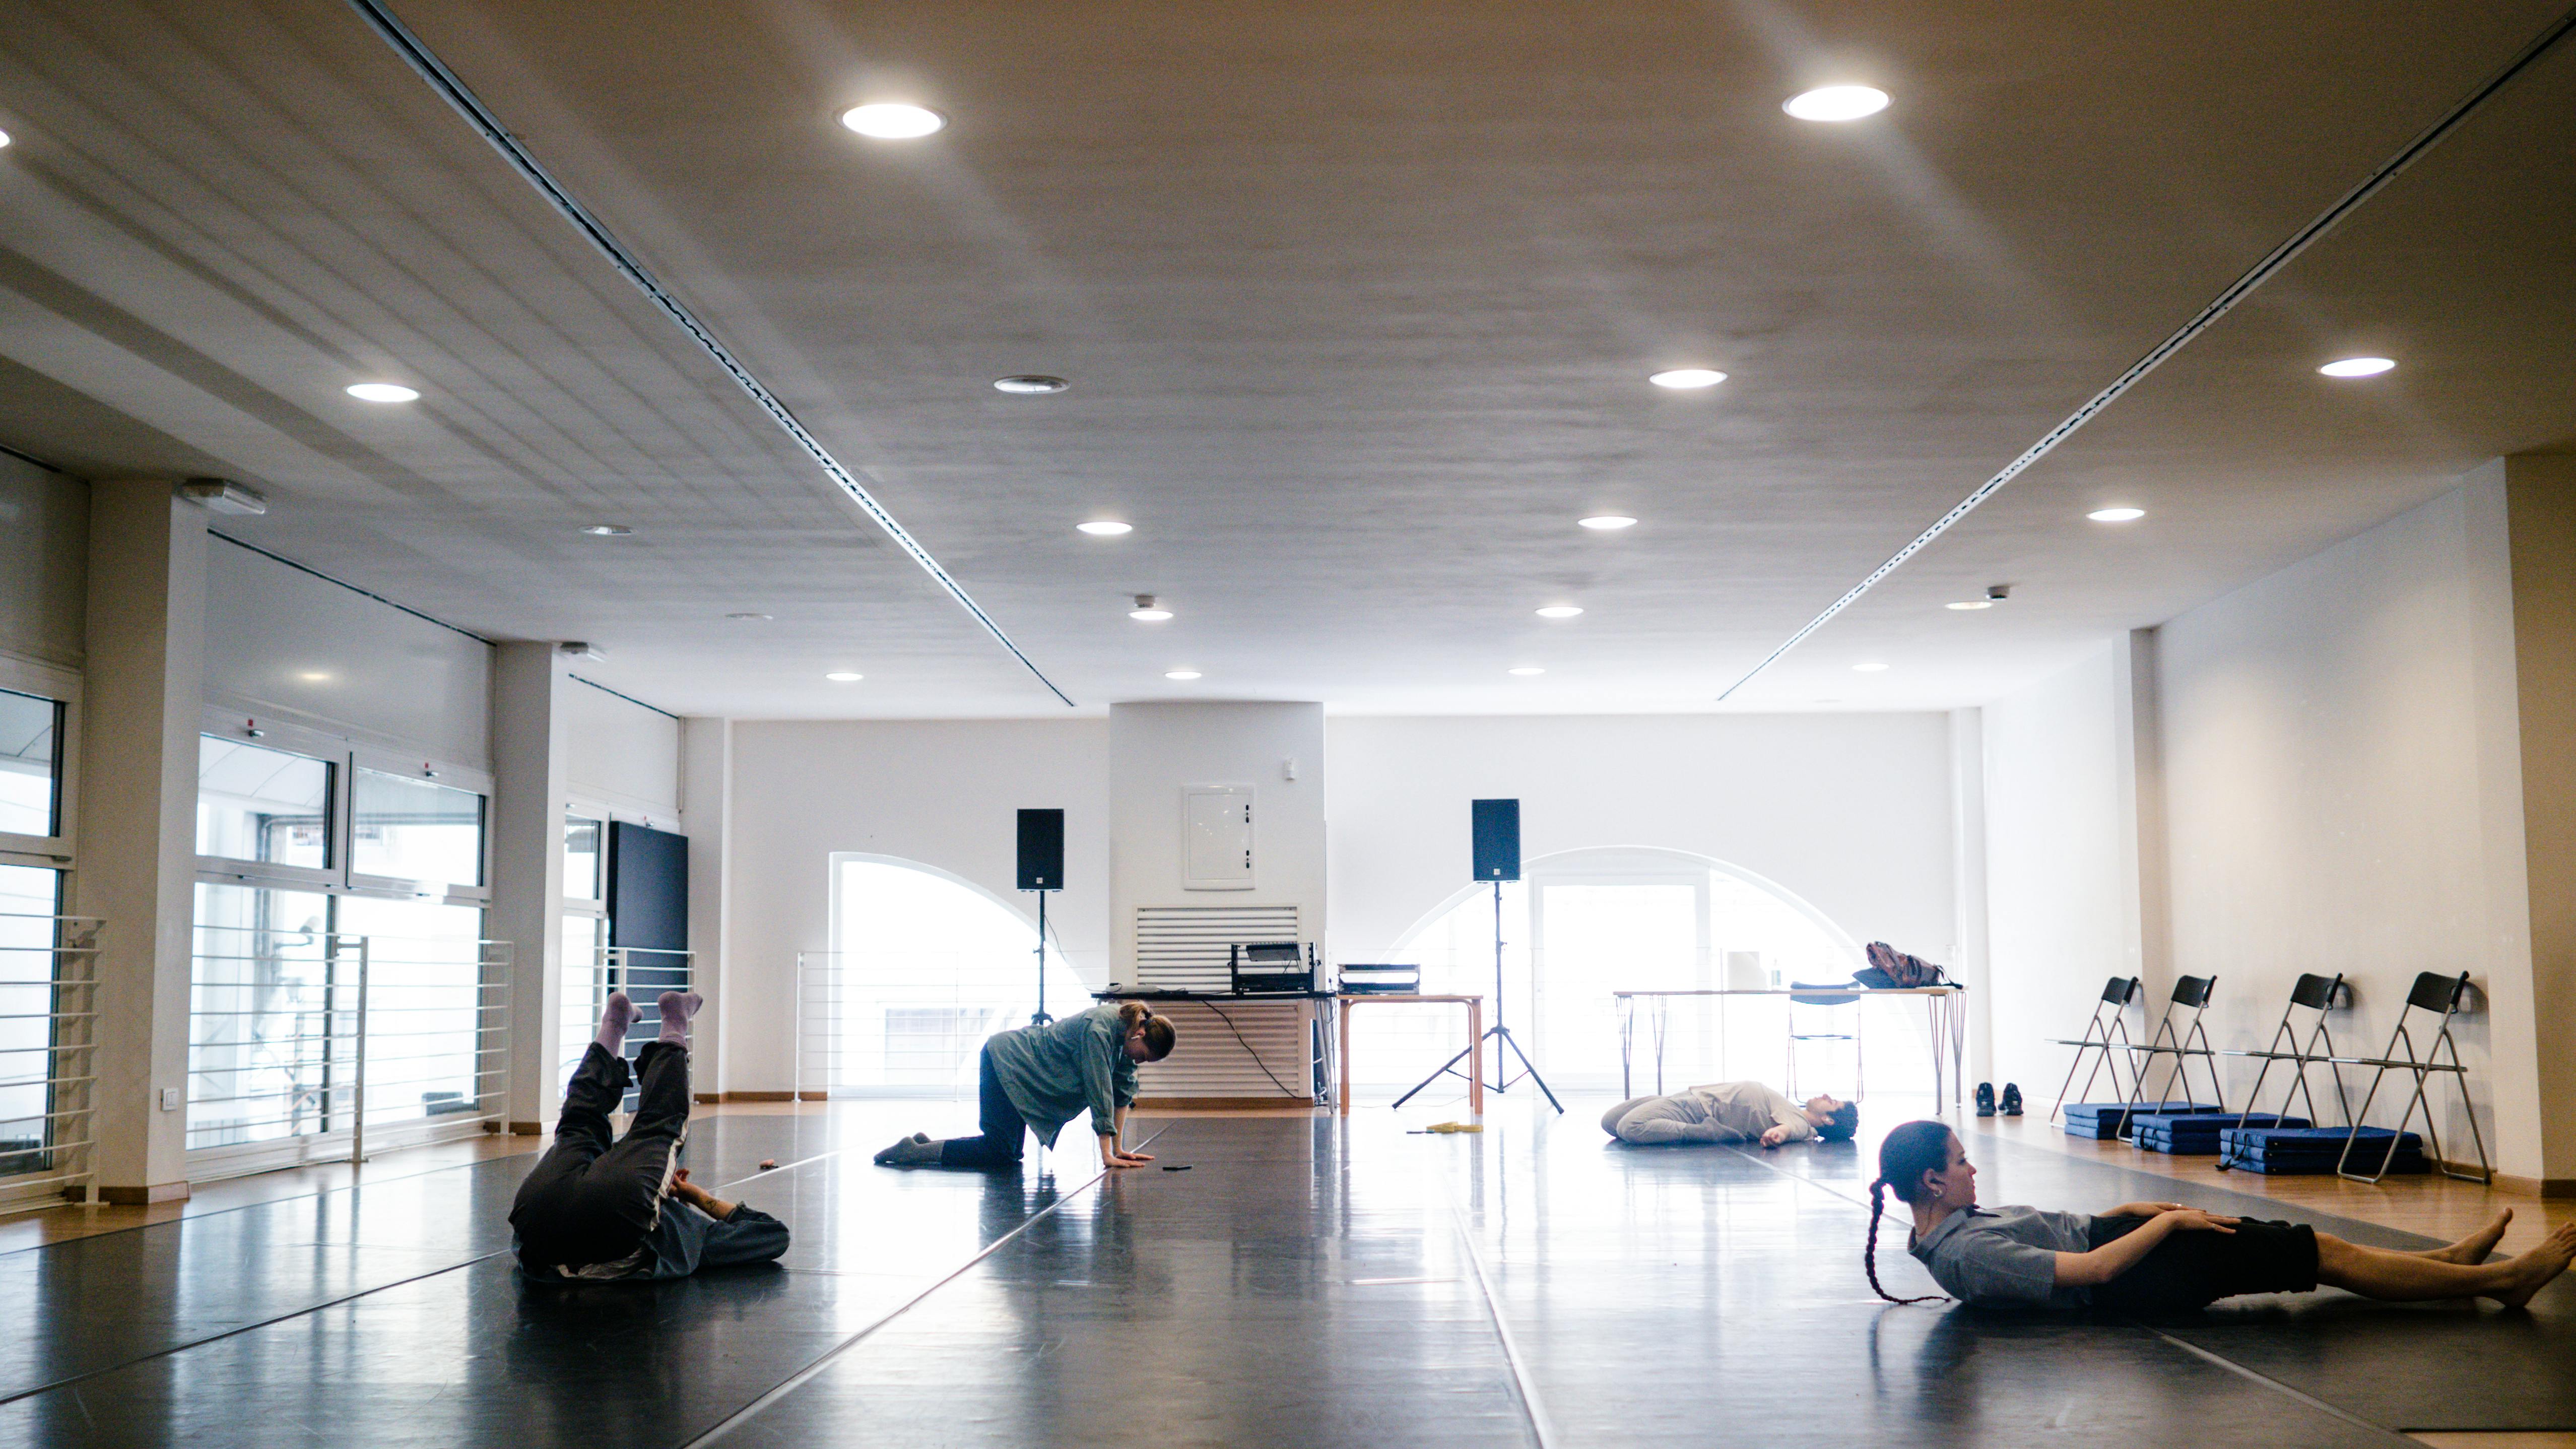 Quattro performer, due ragazze e due ragazzi, in sala, si riscaldano e fanno stretching a contatto con il pavimento